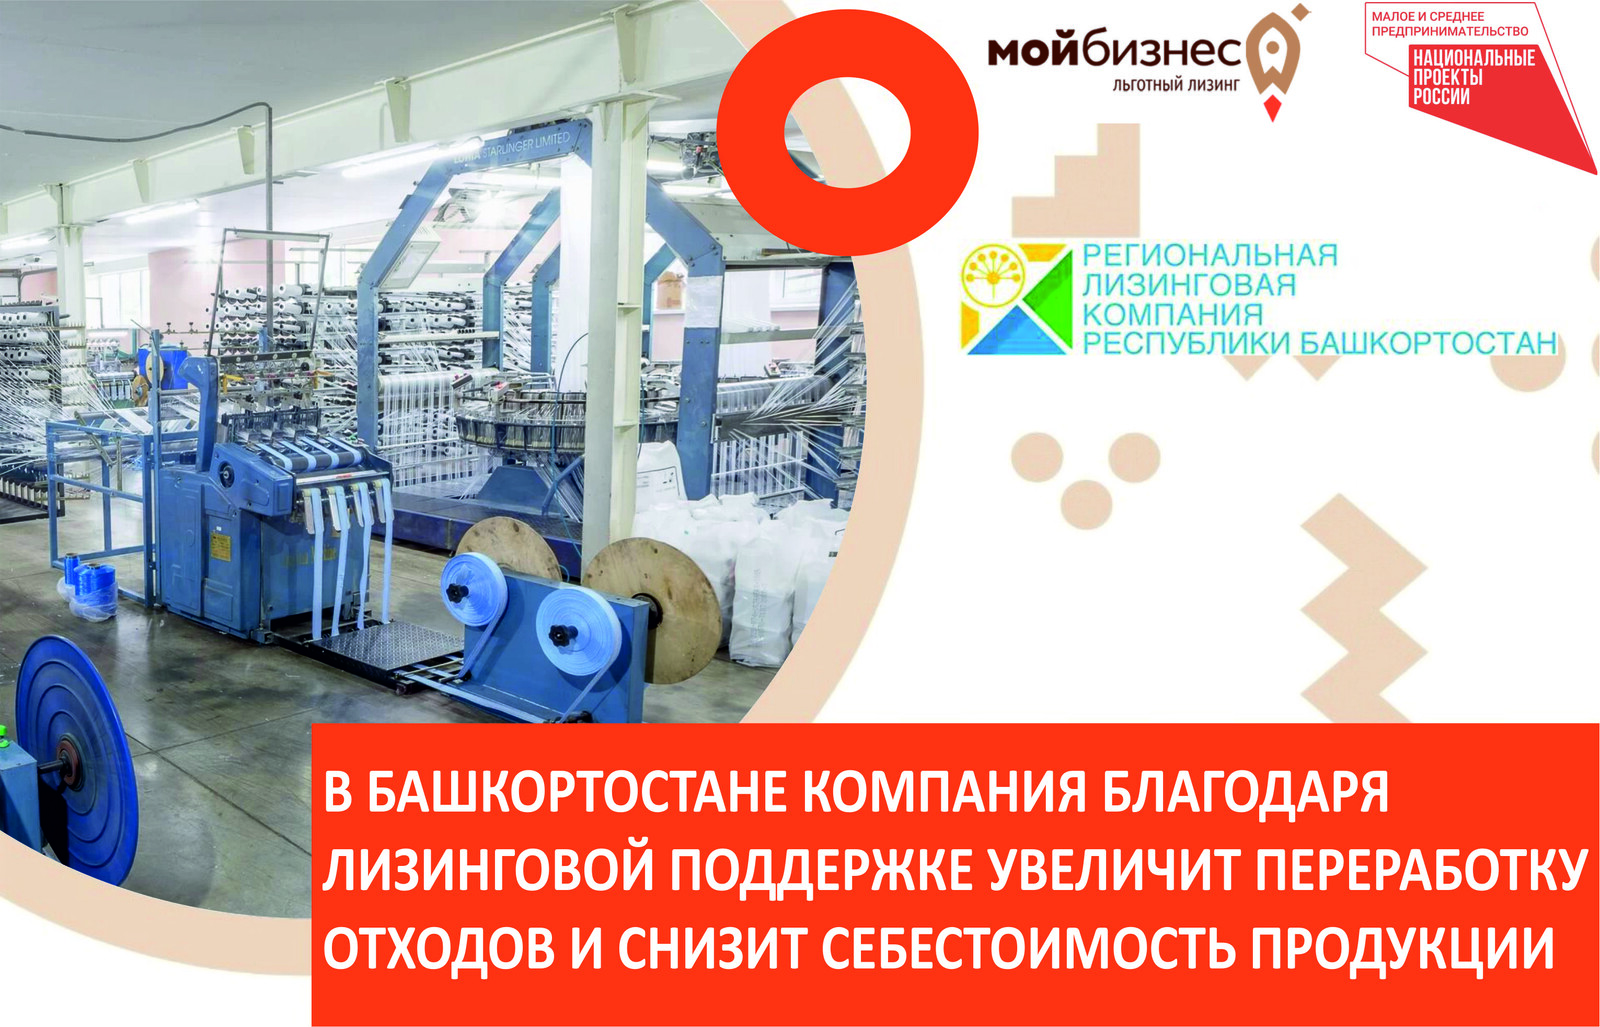 В Башкортостане компания благодаря лизинговой господдержке планирует увеличить переработку отходов и снизить себестоимость продукции